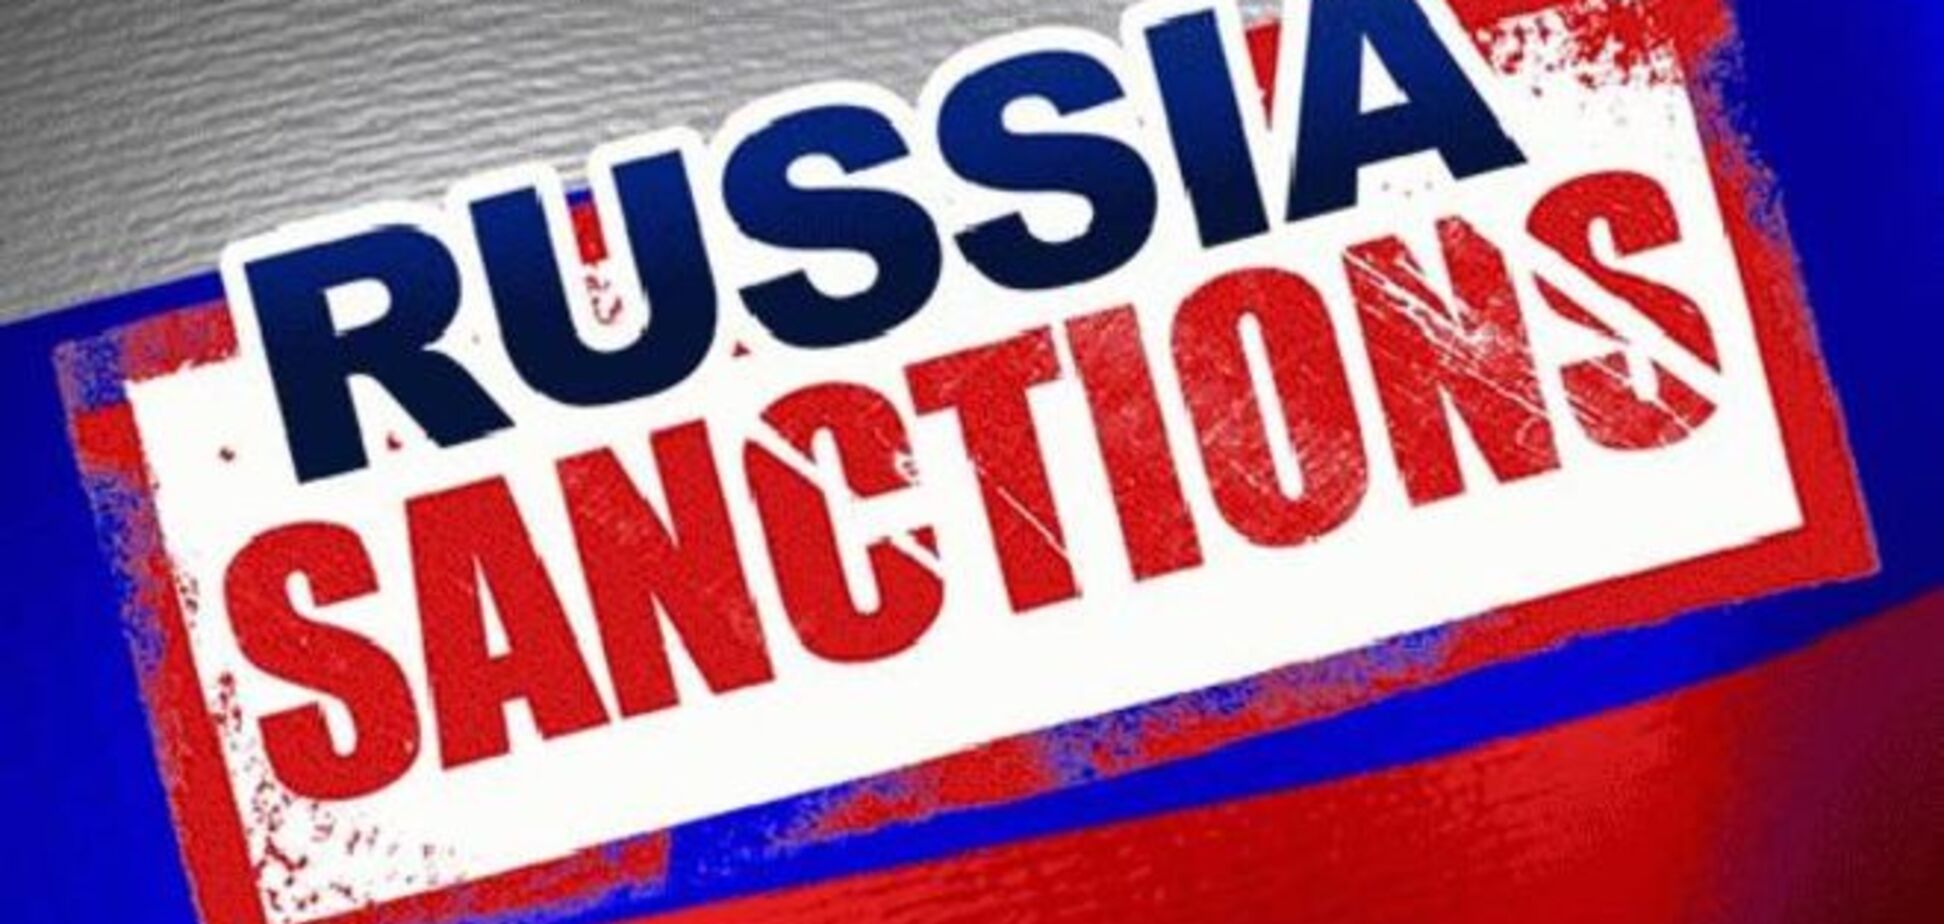 Россияне ежемесячно теряют 5% реальных доходов из-за санкций - соратник Немцова